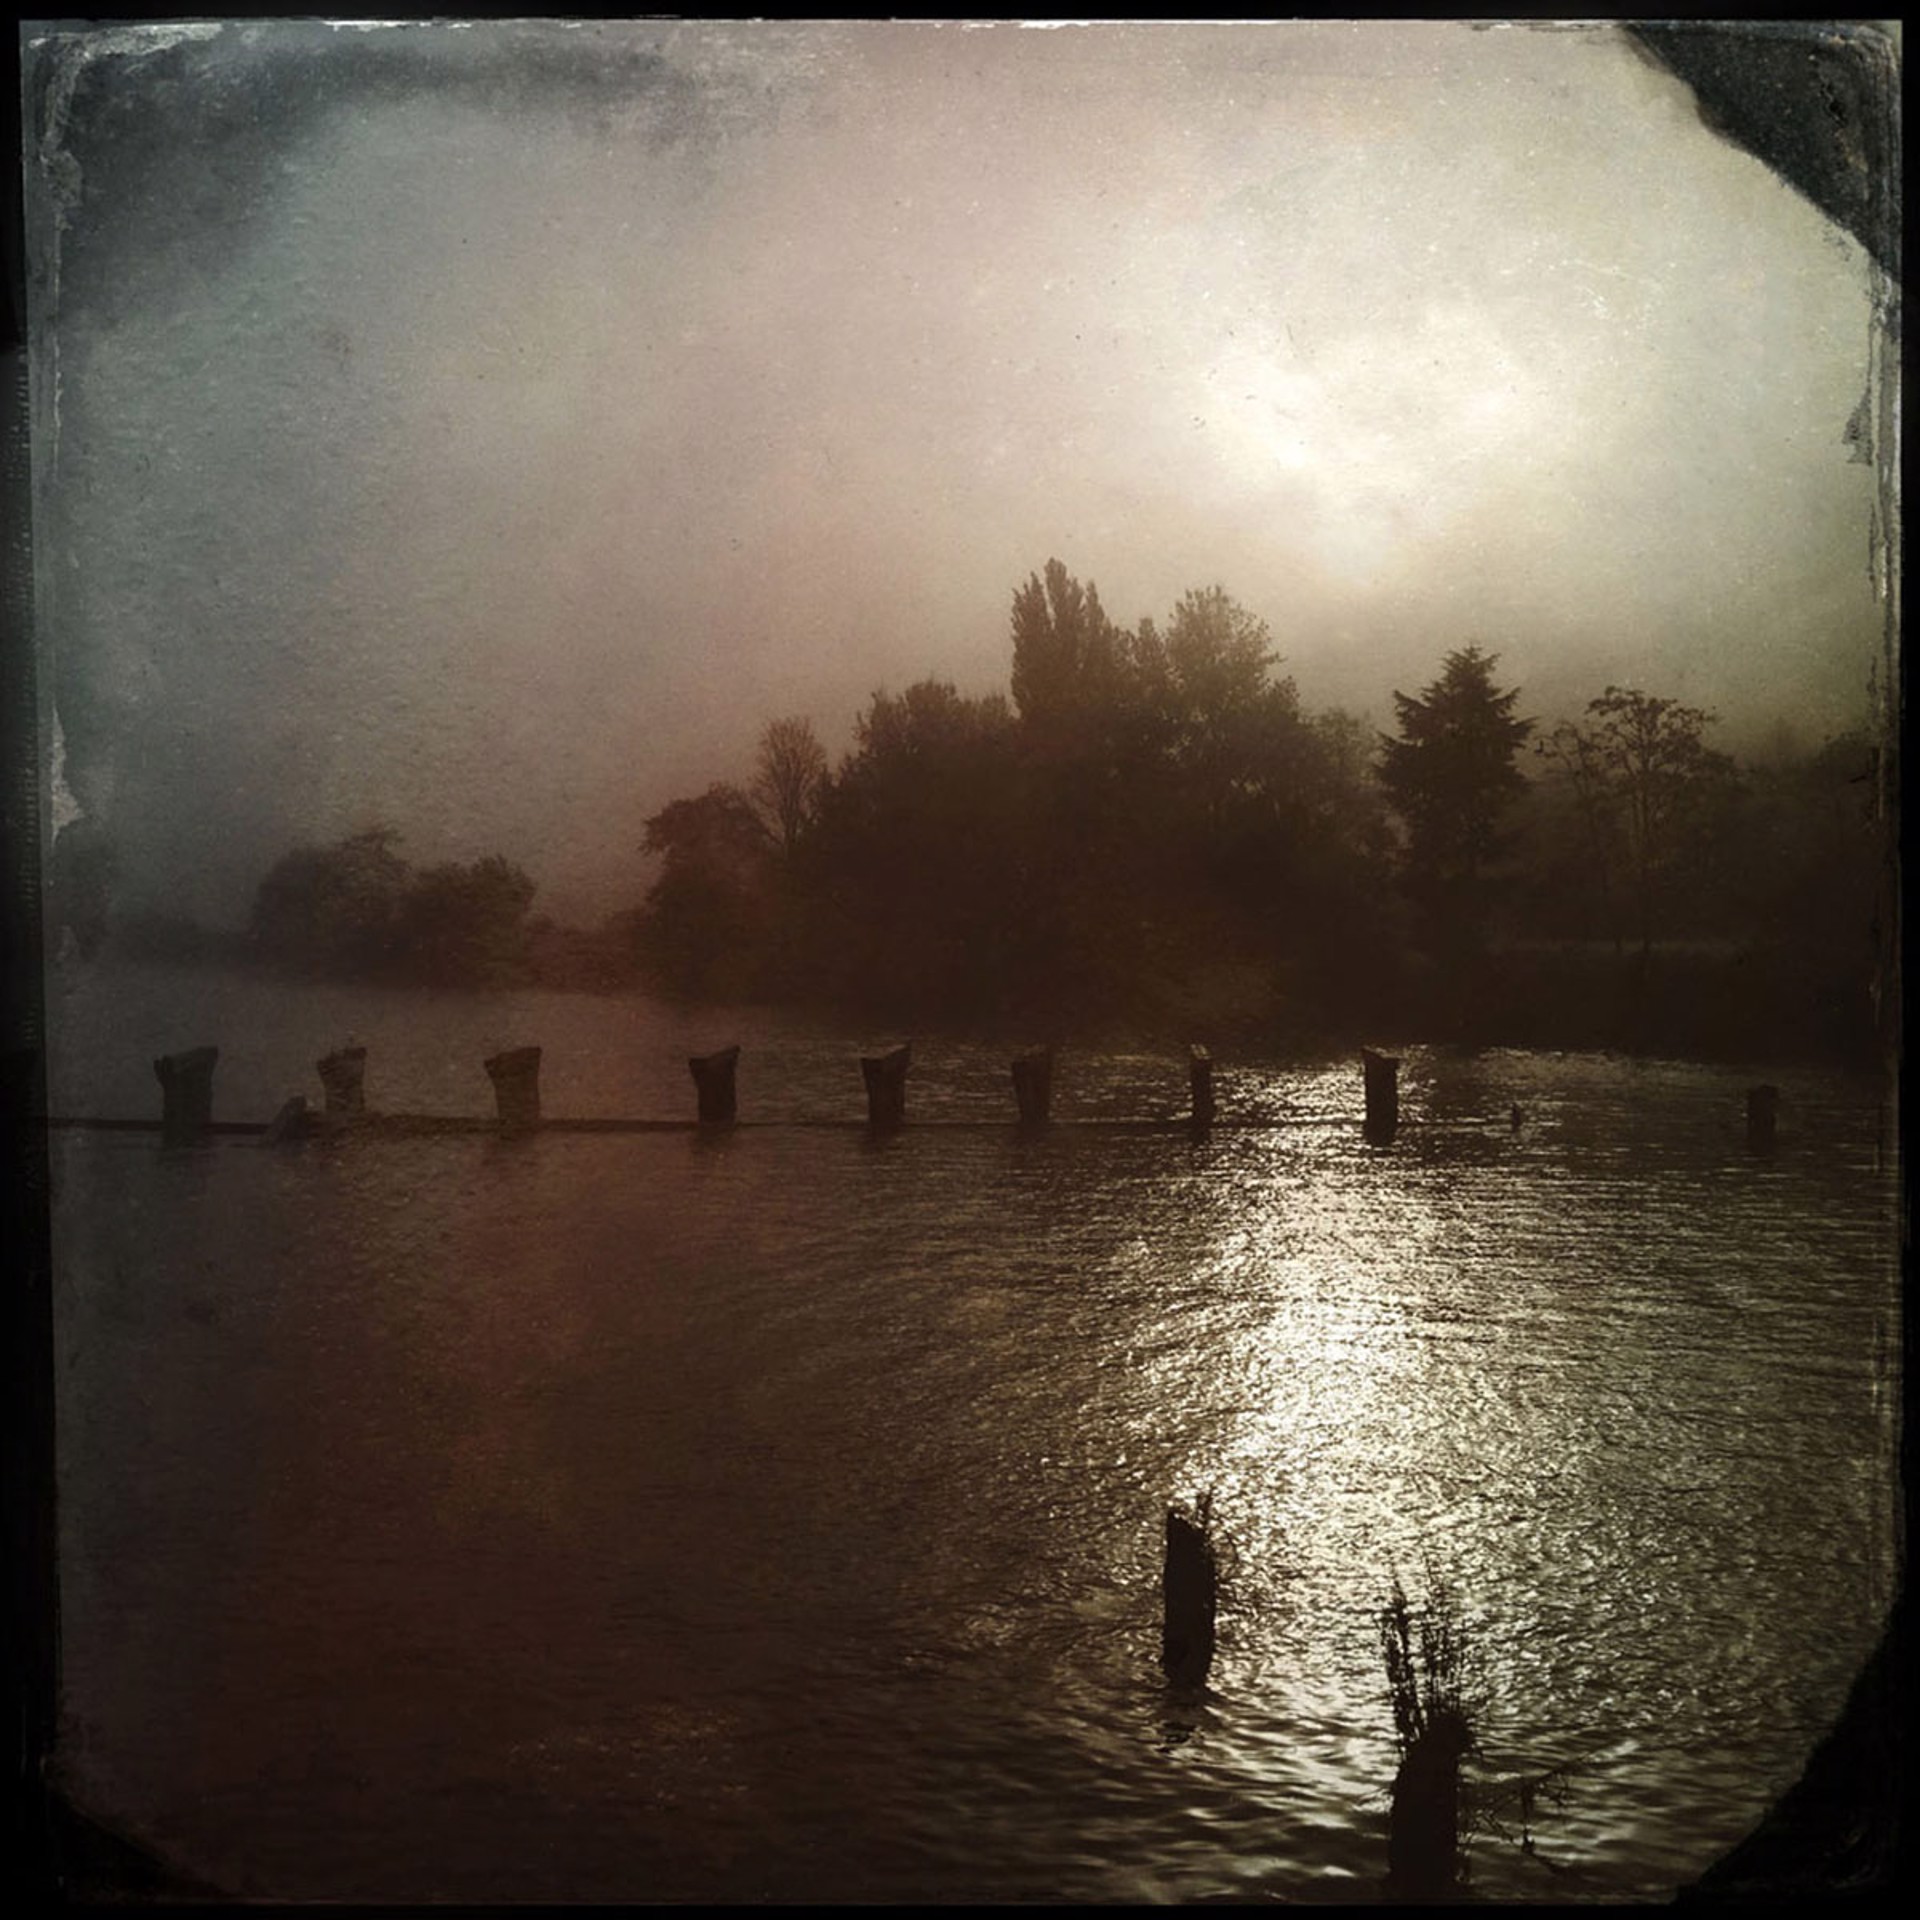 Morning Fog by Arlene Stanger